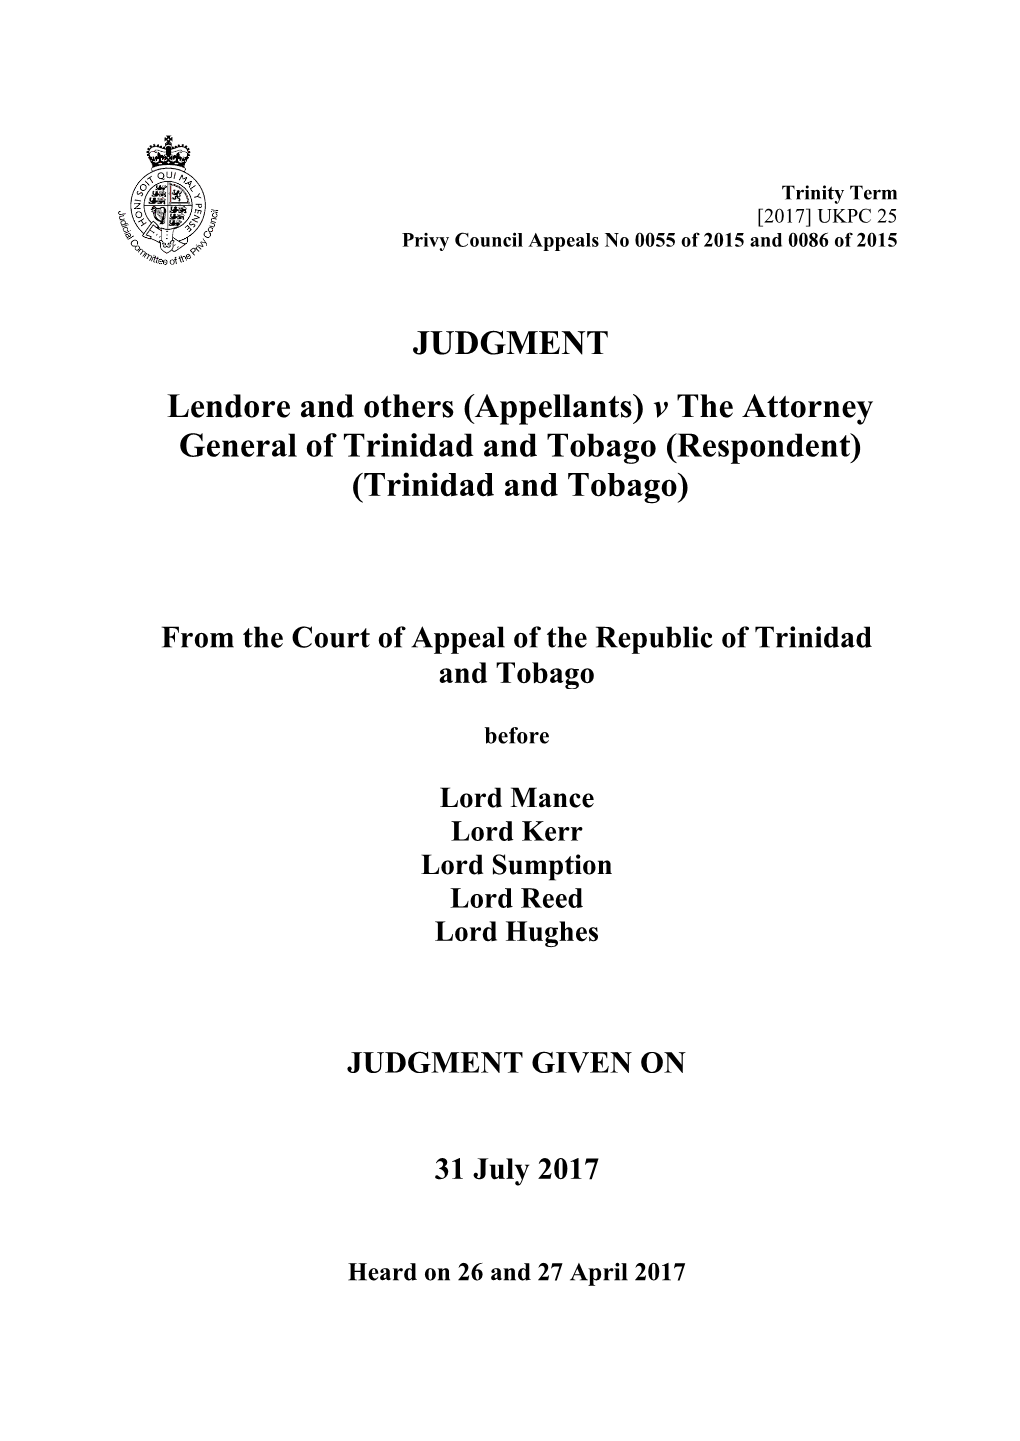 Appellants) V the Attorney General of Trinidad and Tobago (Respondent) (Trinidad and Tobago